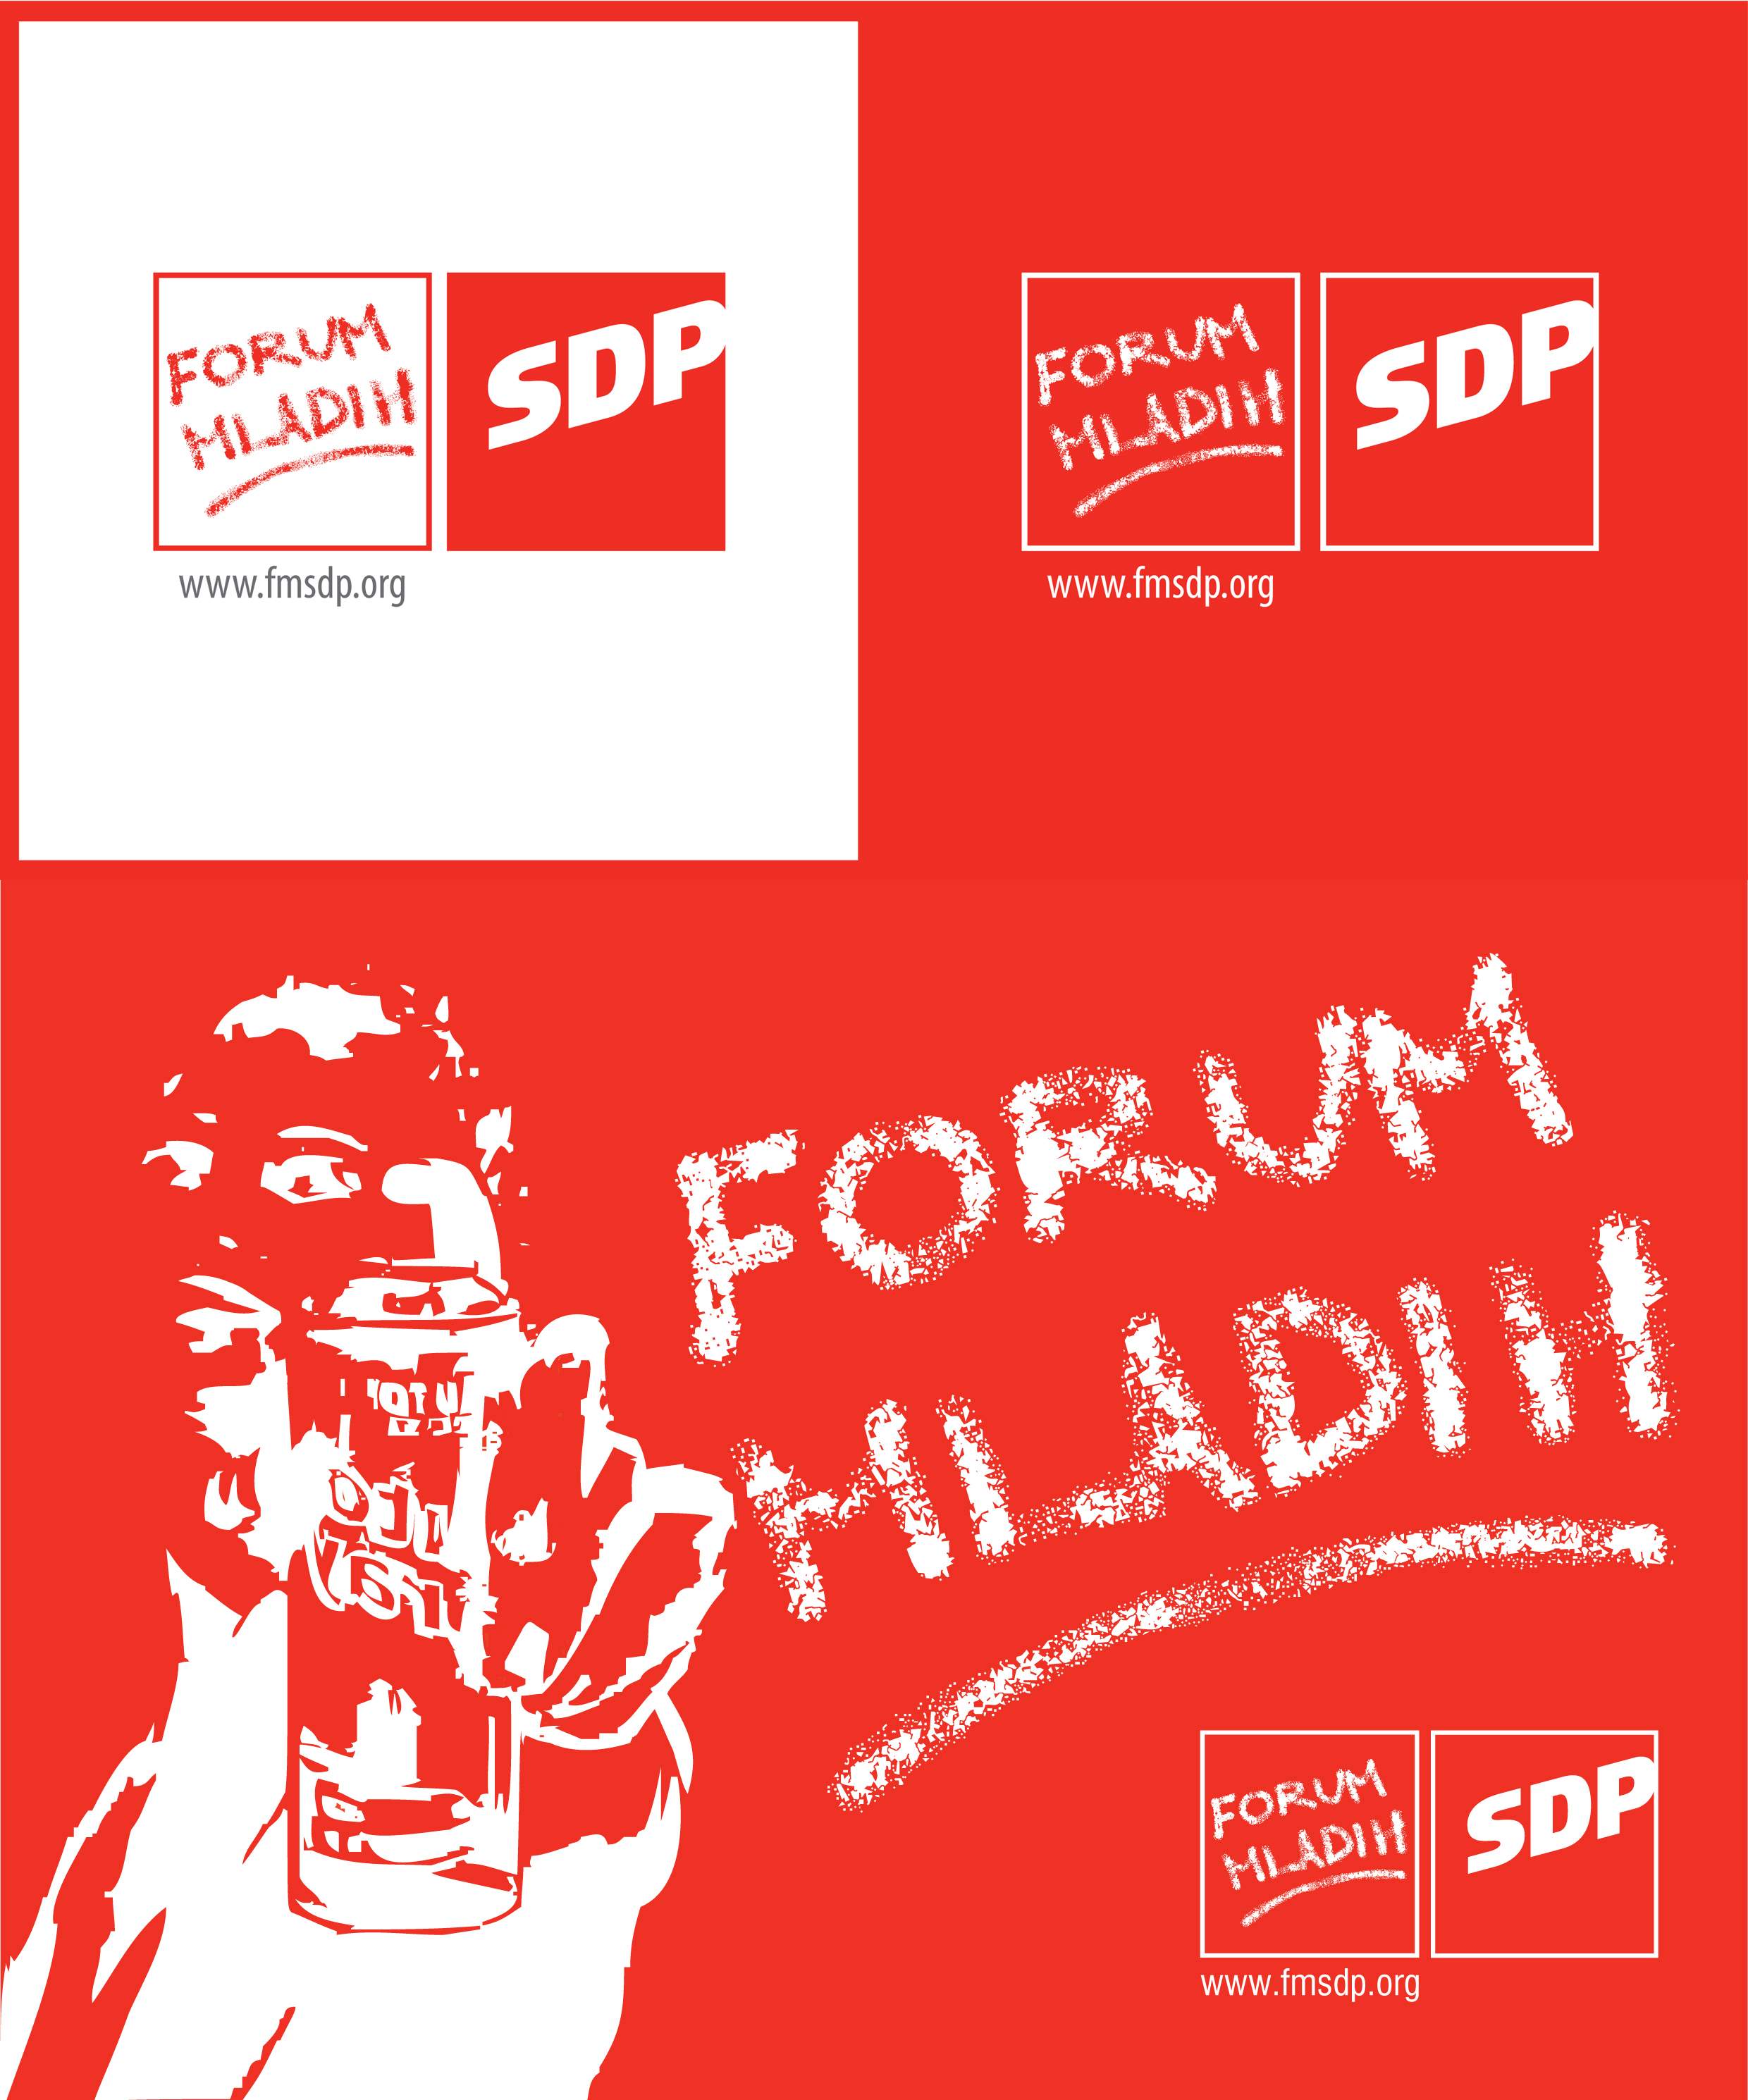 Forum Mladih by Johnny99